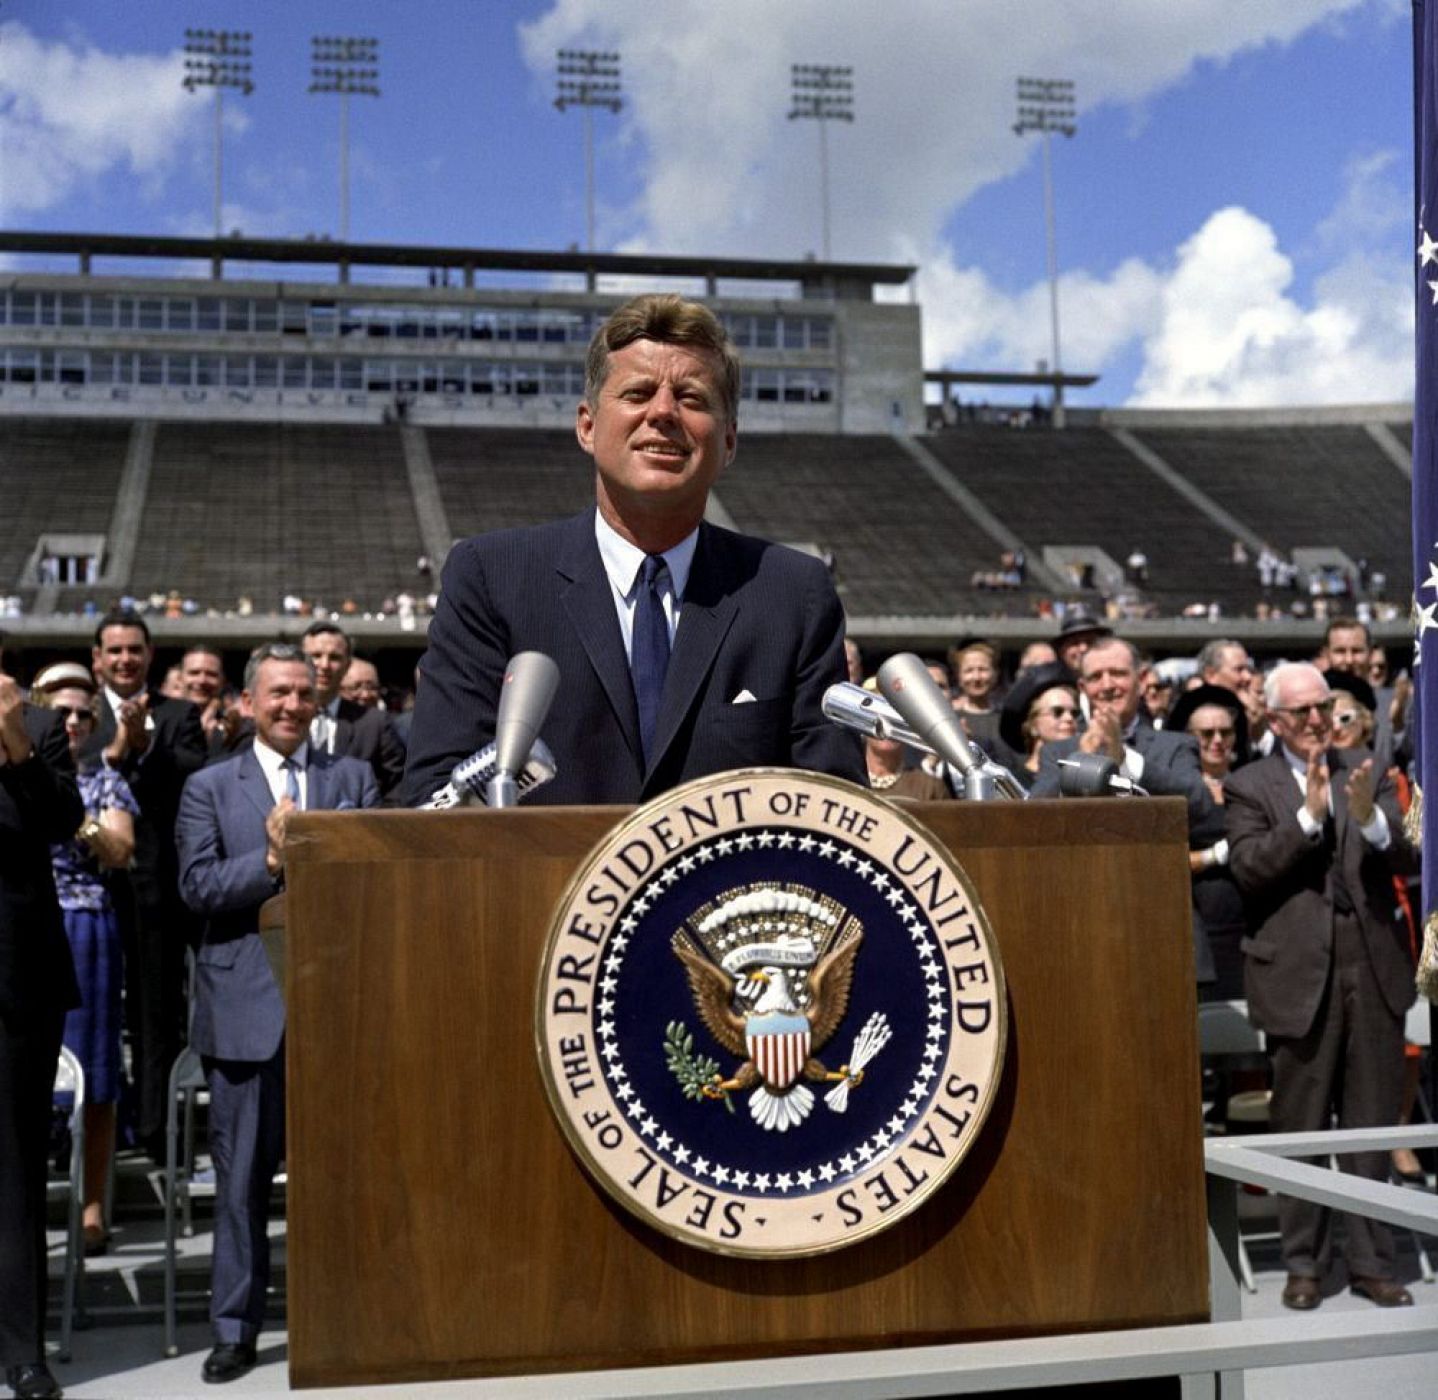 Fotografía fechada el pasado 12 de diciembre de 1962 que muestra al presidente estadounidense John F. Kennedy durante un discurso en la Universidad Rice de Houston